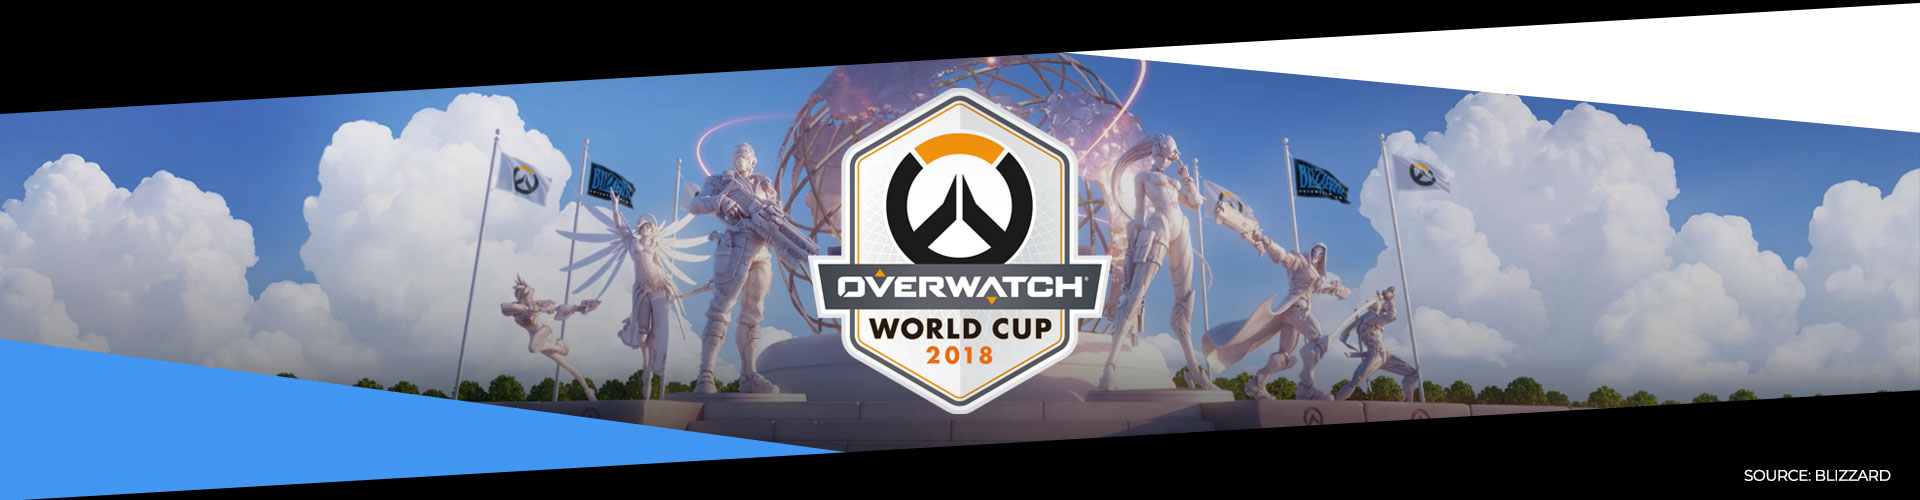 Eventsida för Overwatch World Cup, som är spelets officiella världsmästerskap.